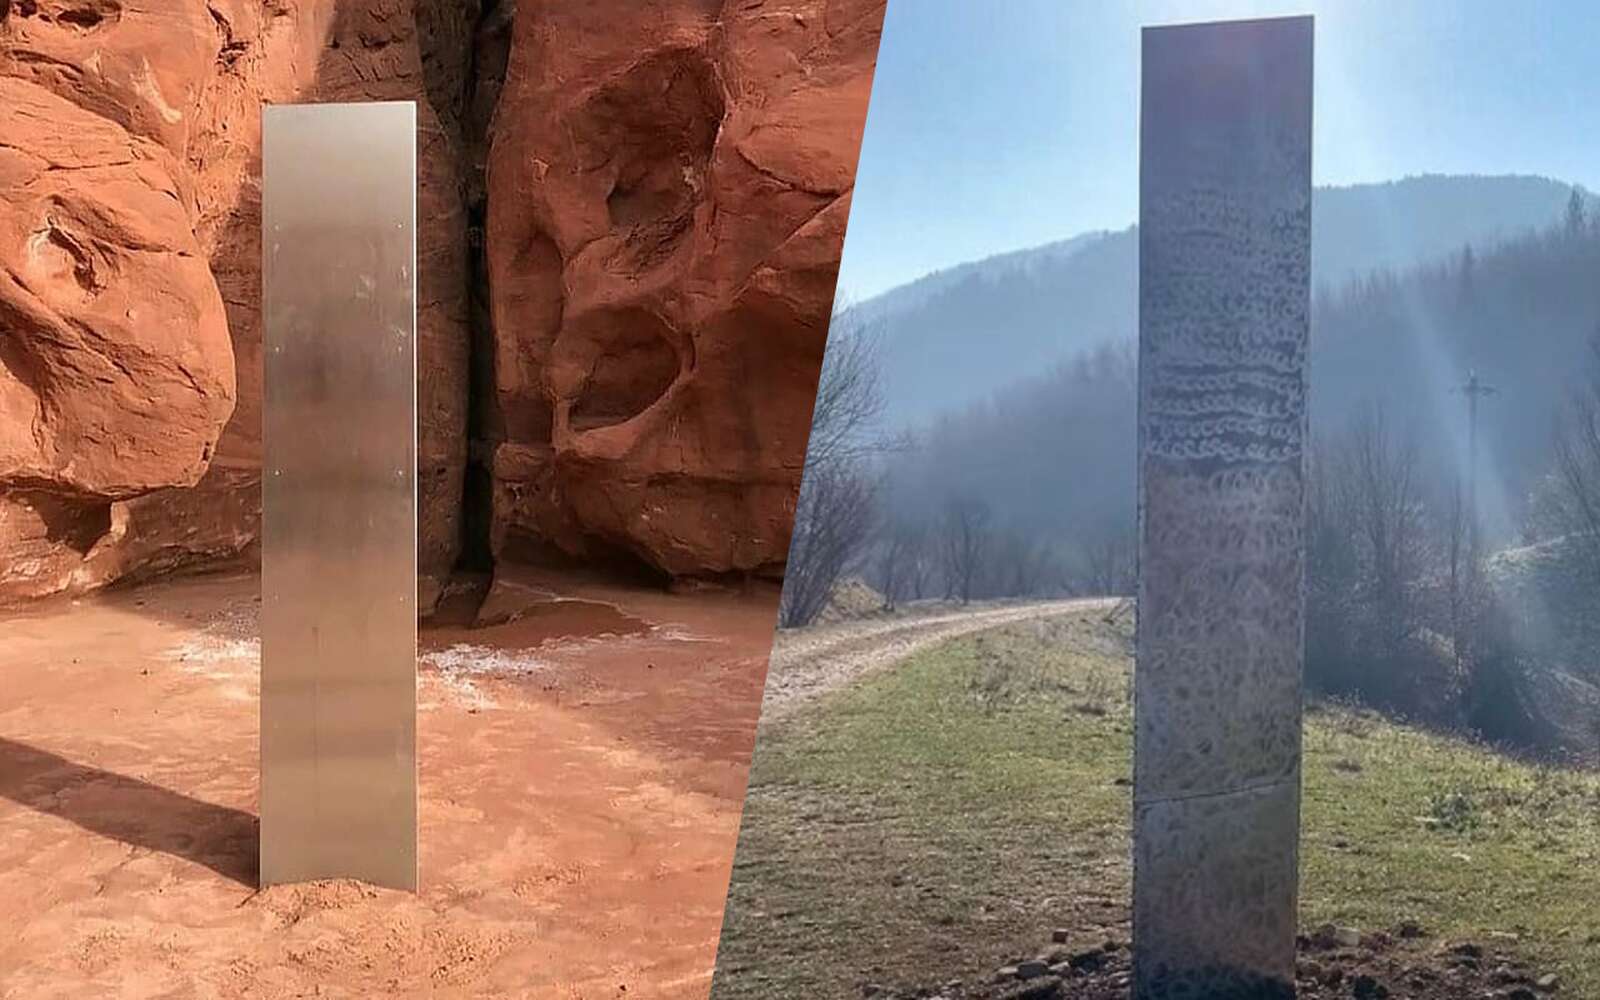 Les monolithes de l'Utah et de Roumanie. © DPS News Utah, Ziar Piatra Neamt